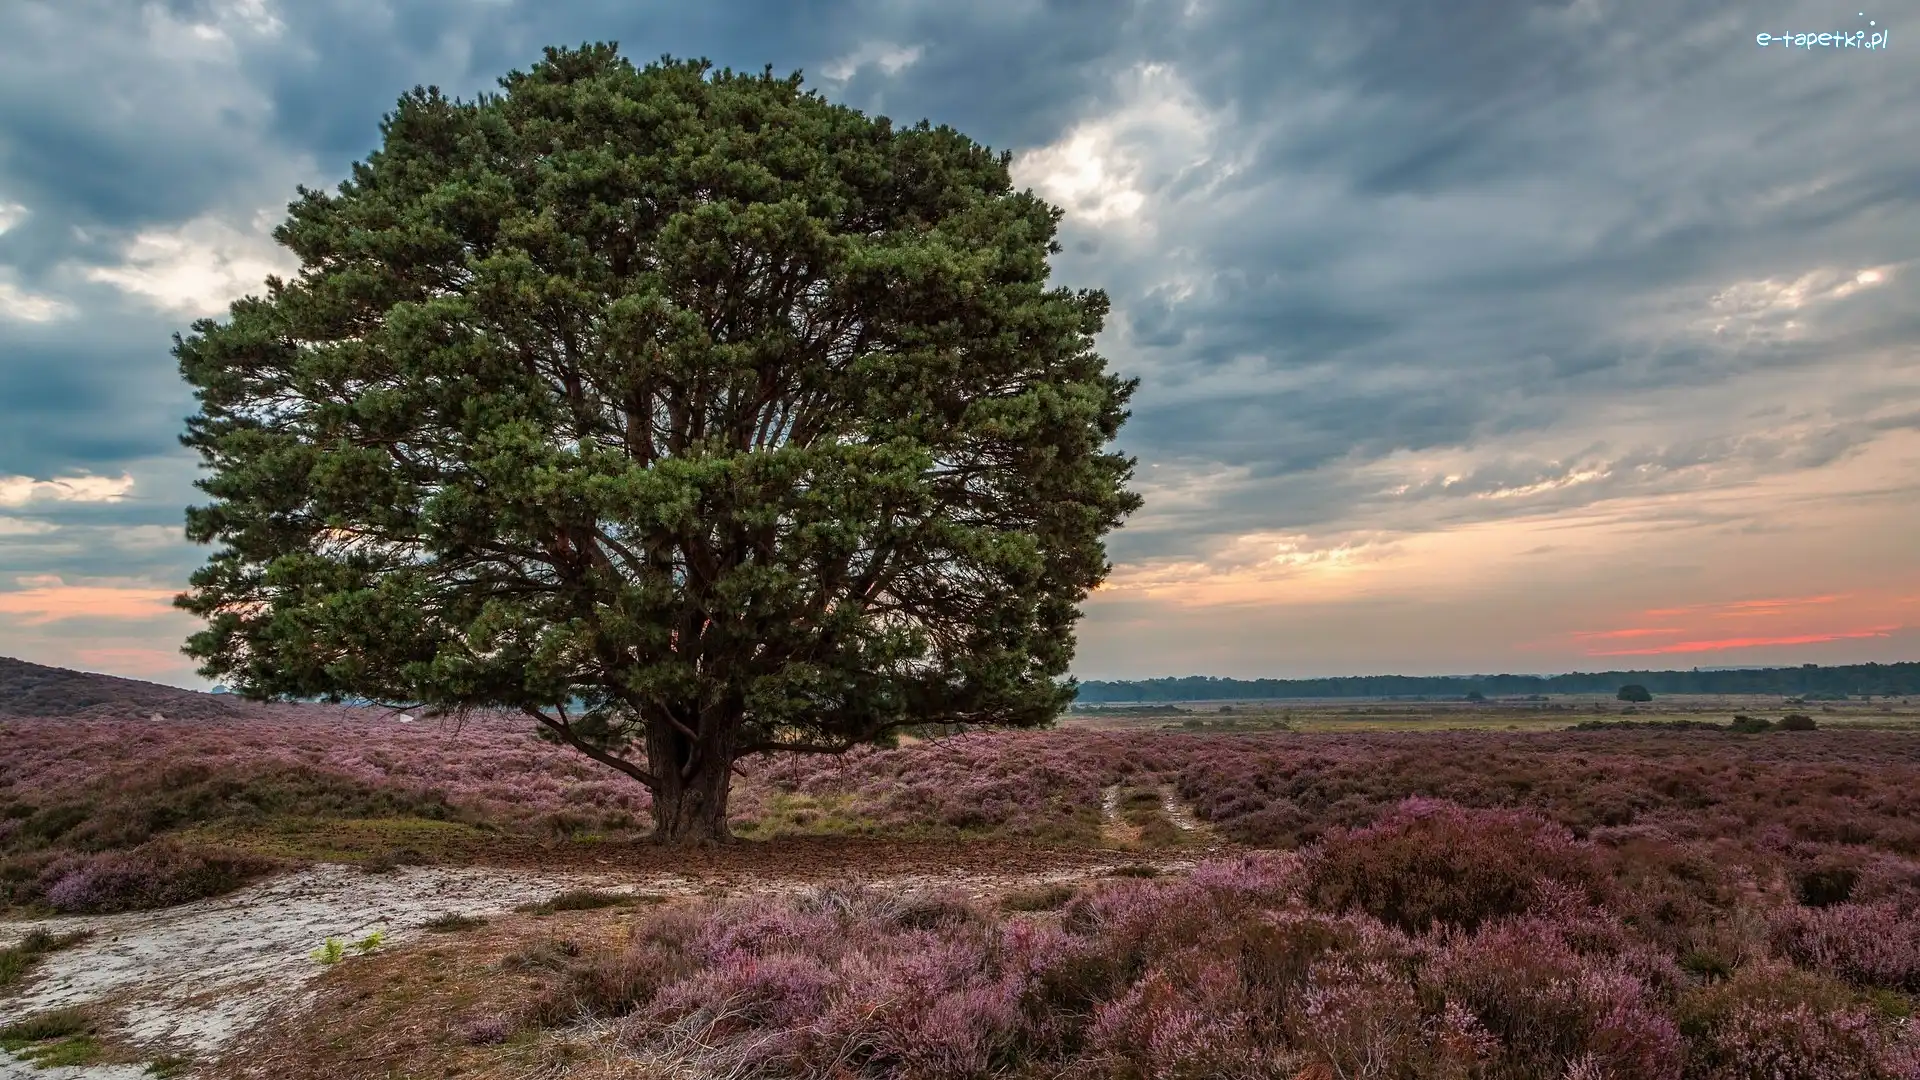 Roydon Common, Drzewo, Rezerwat Przyrody, Anglia, Wrzosowisko, Wschód słońca